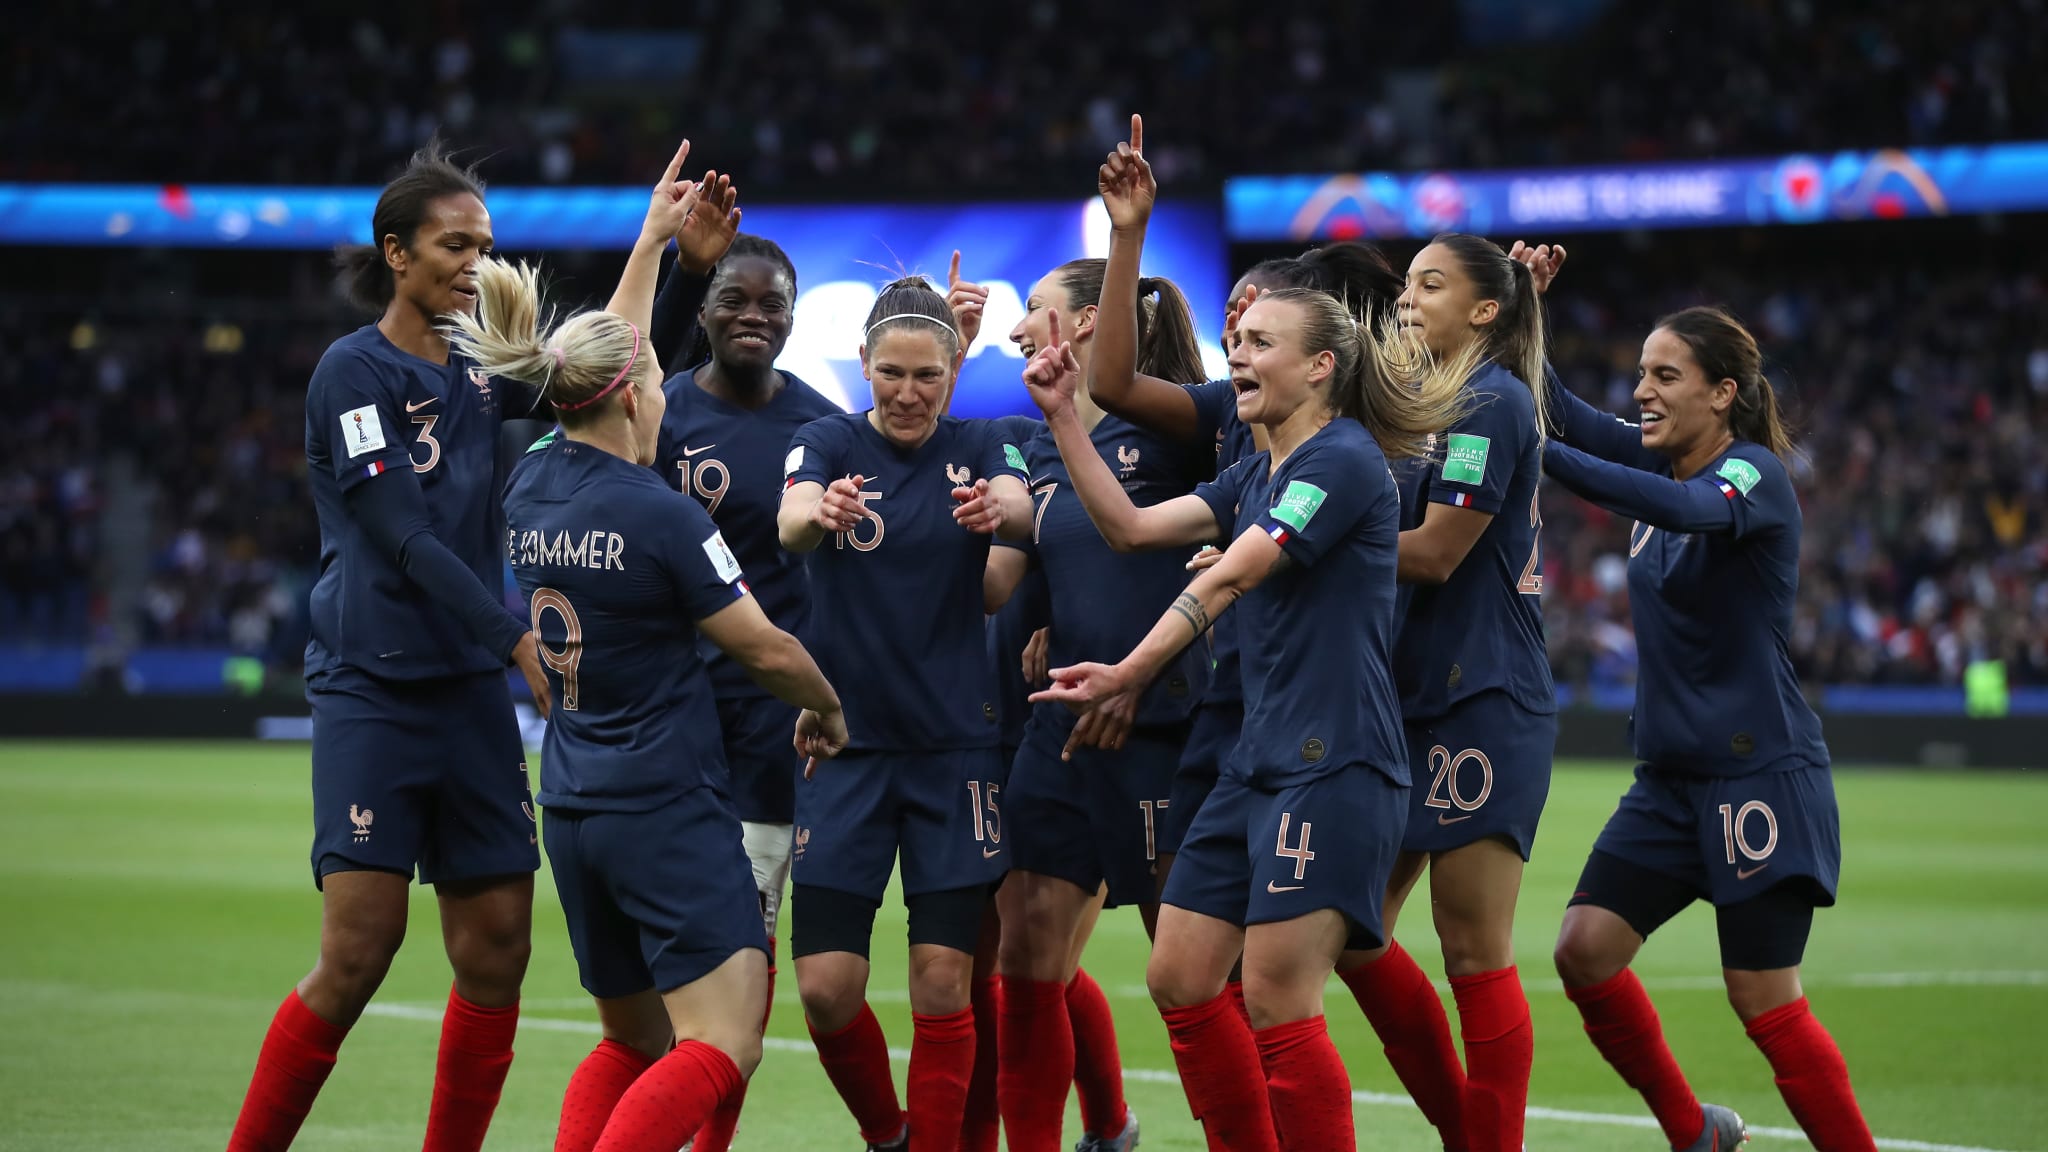 Hosts France enjoy winning start as FIFA Womens World Cup kicks off